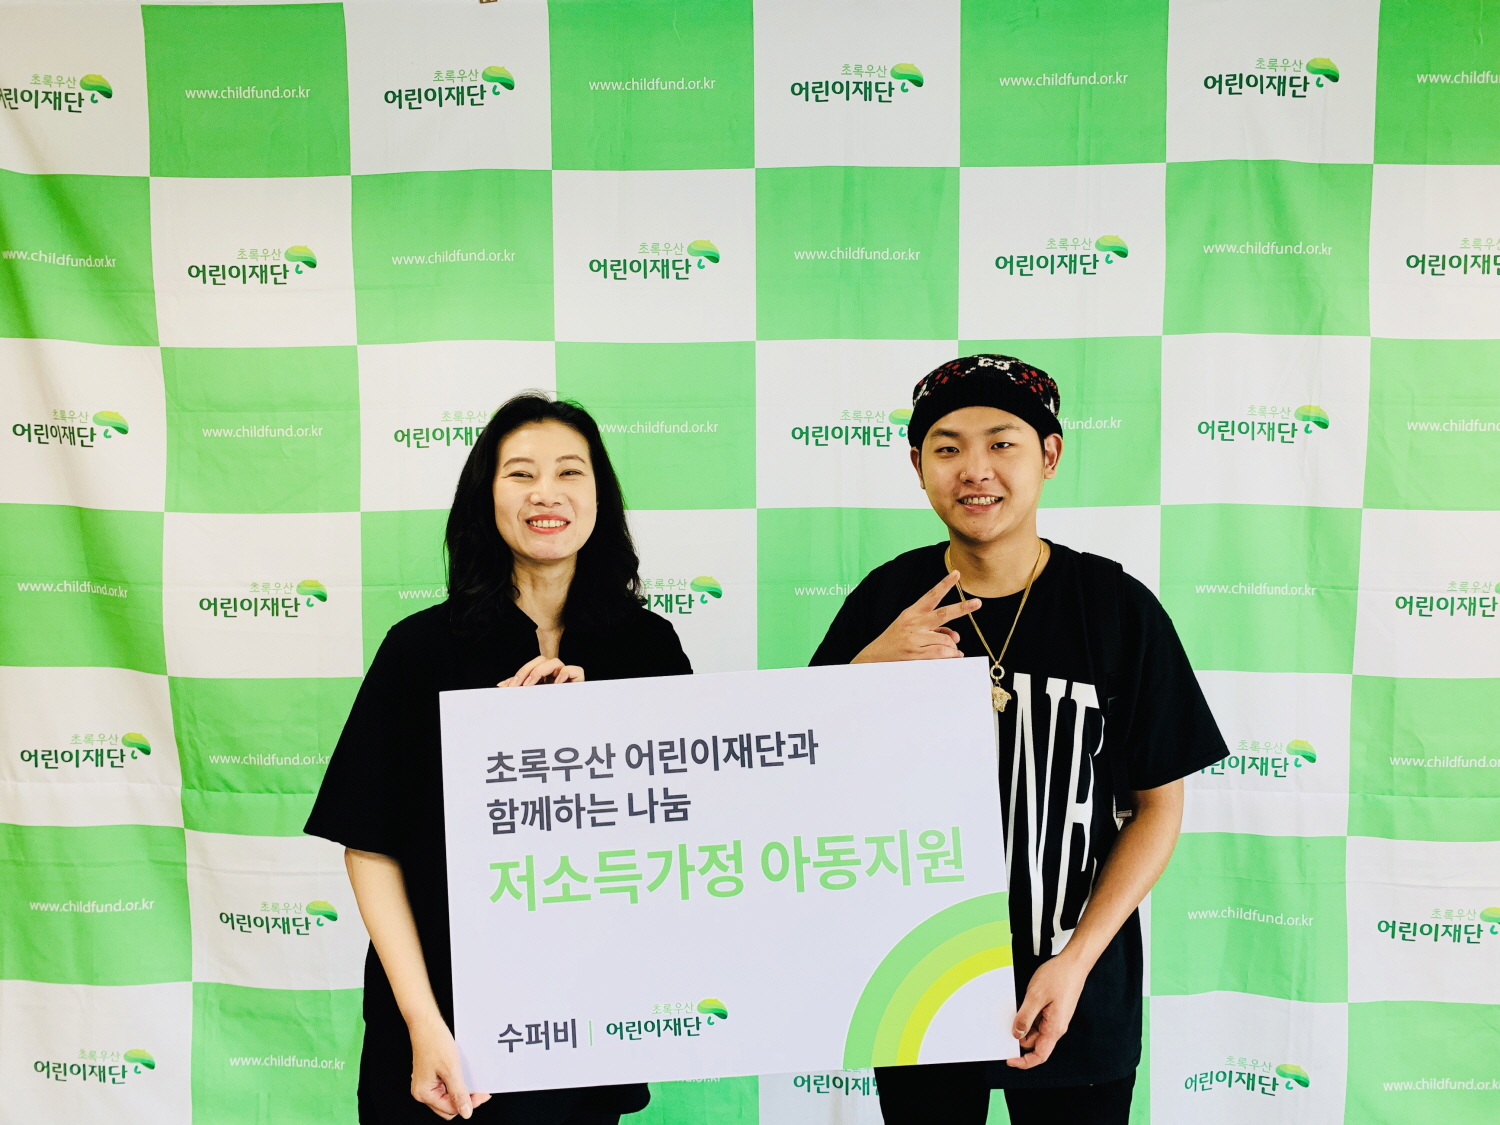 韩国歌手superbee连续3年将个人演唱会收益全额捐赠